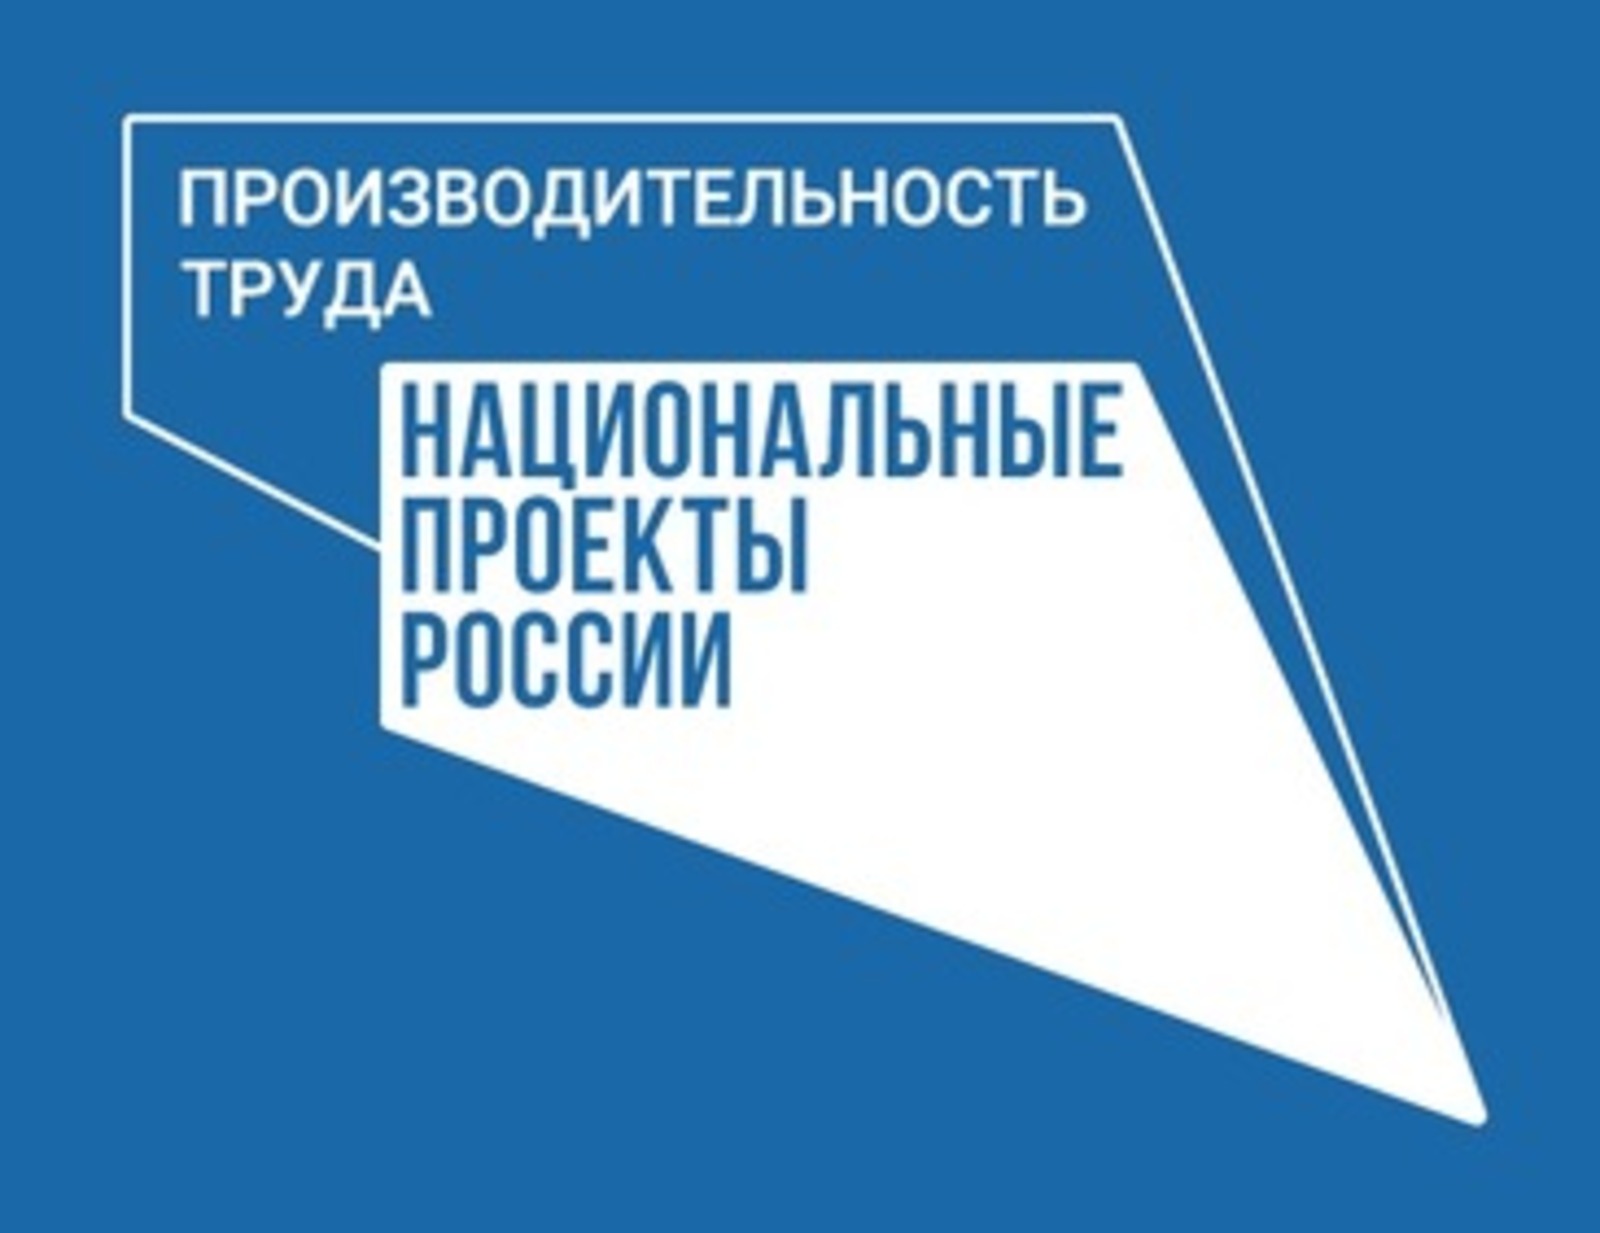 В Башкортостане три предприятия нацпроекта «Производительность труда» создадут базы для переподготовки работников